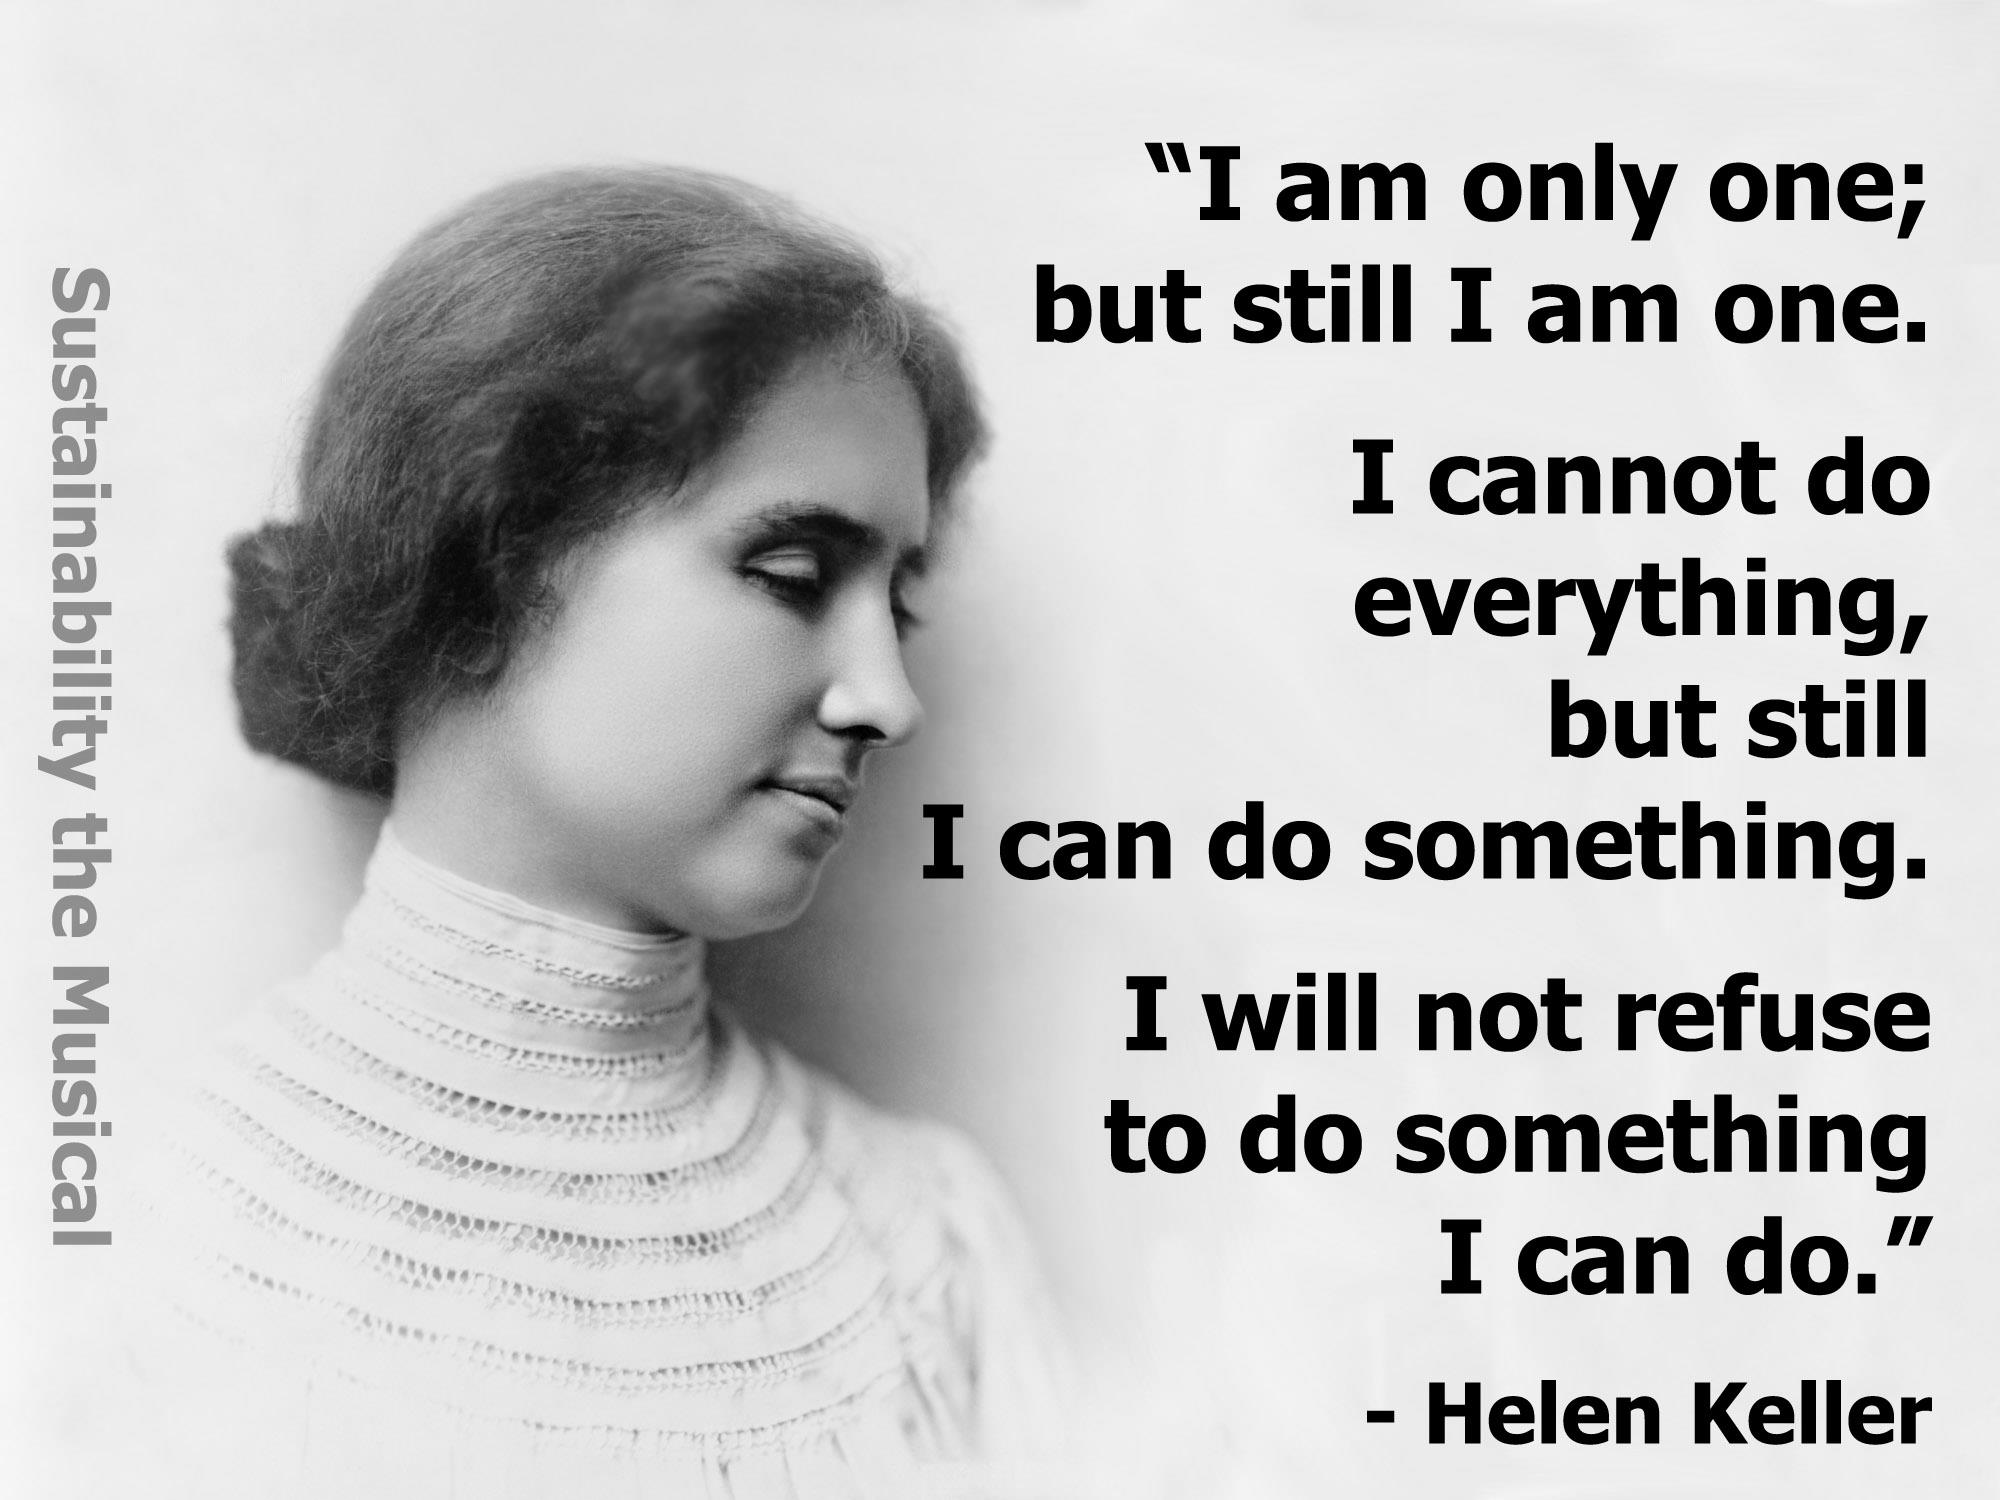 Helen Keller's quote #8